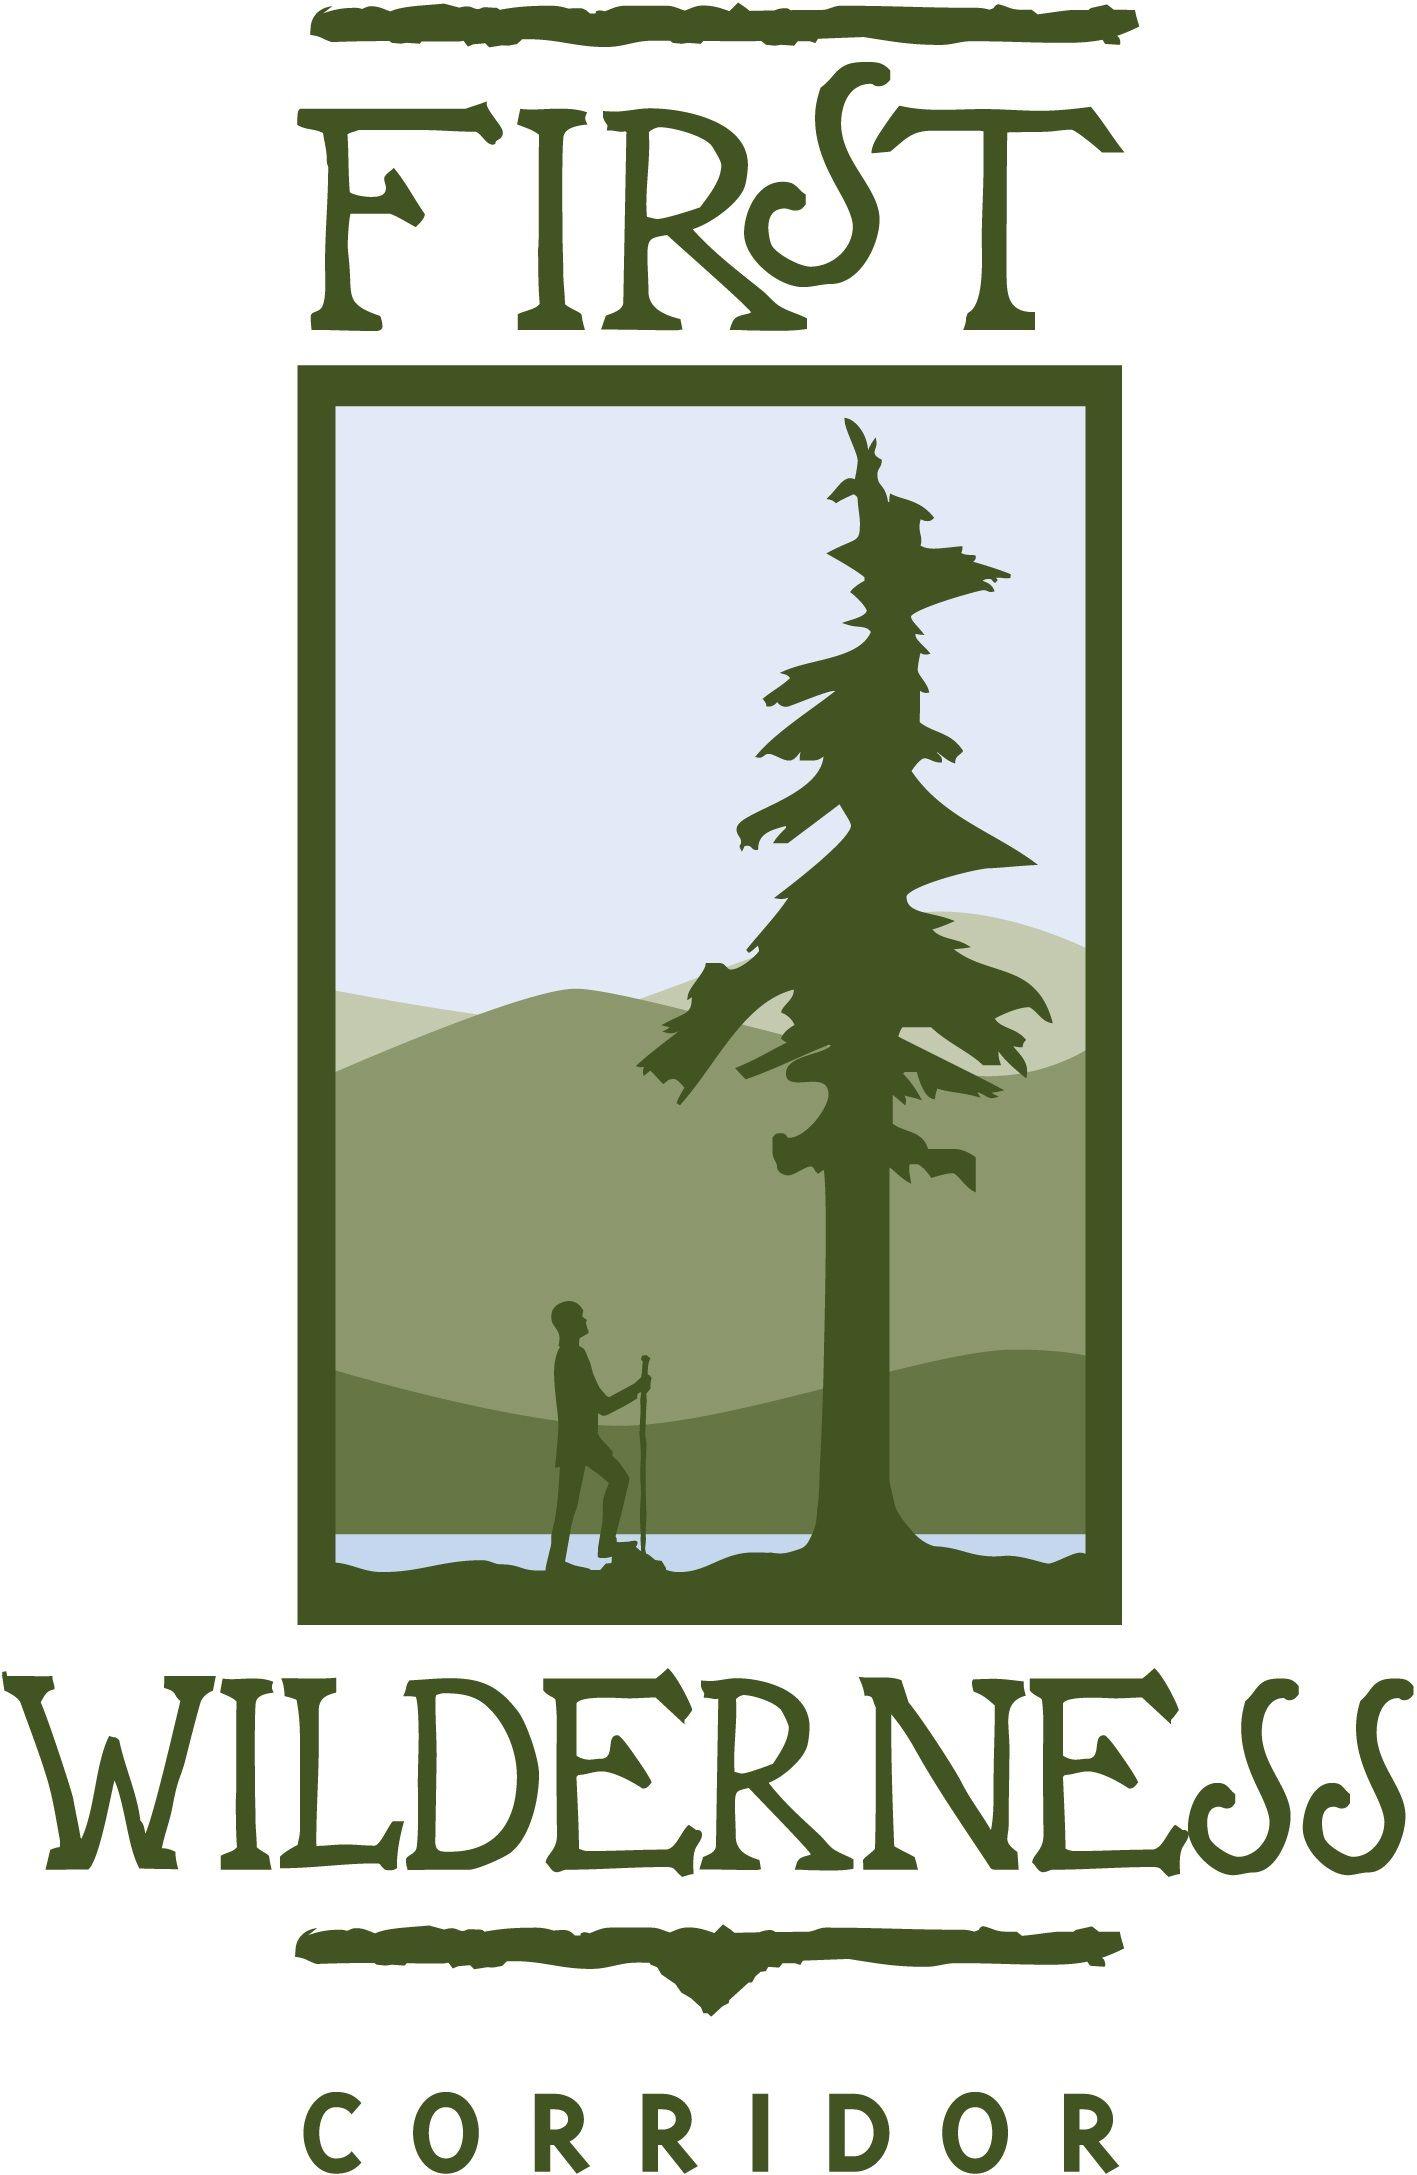 Wilderness Logo - First Wilderness Heritage Corridor